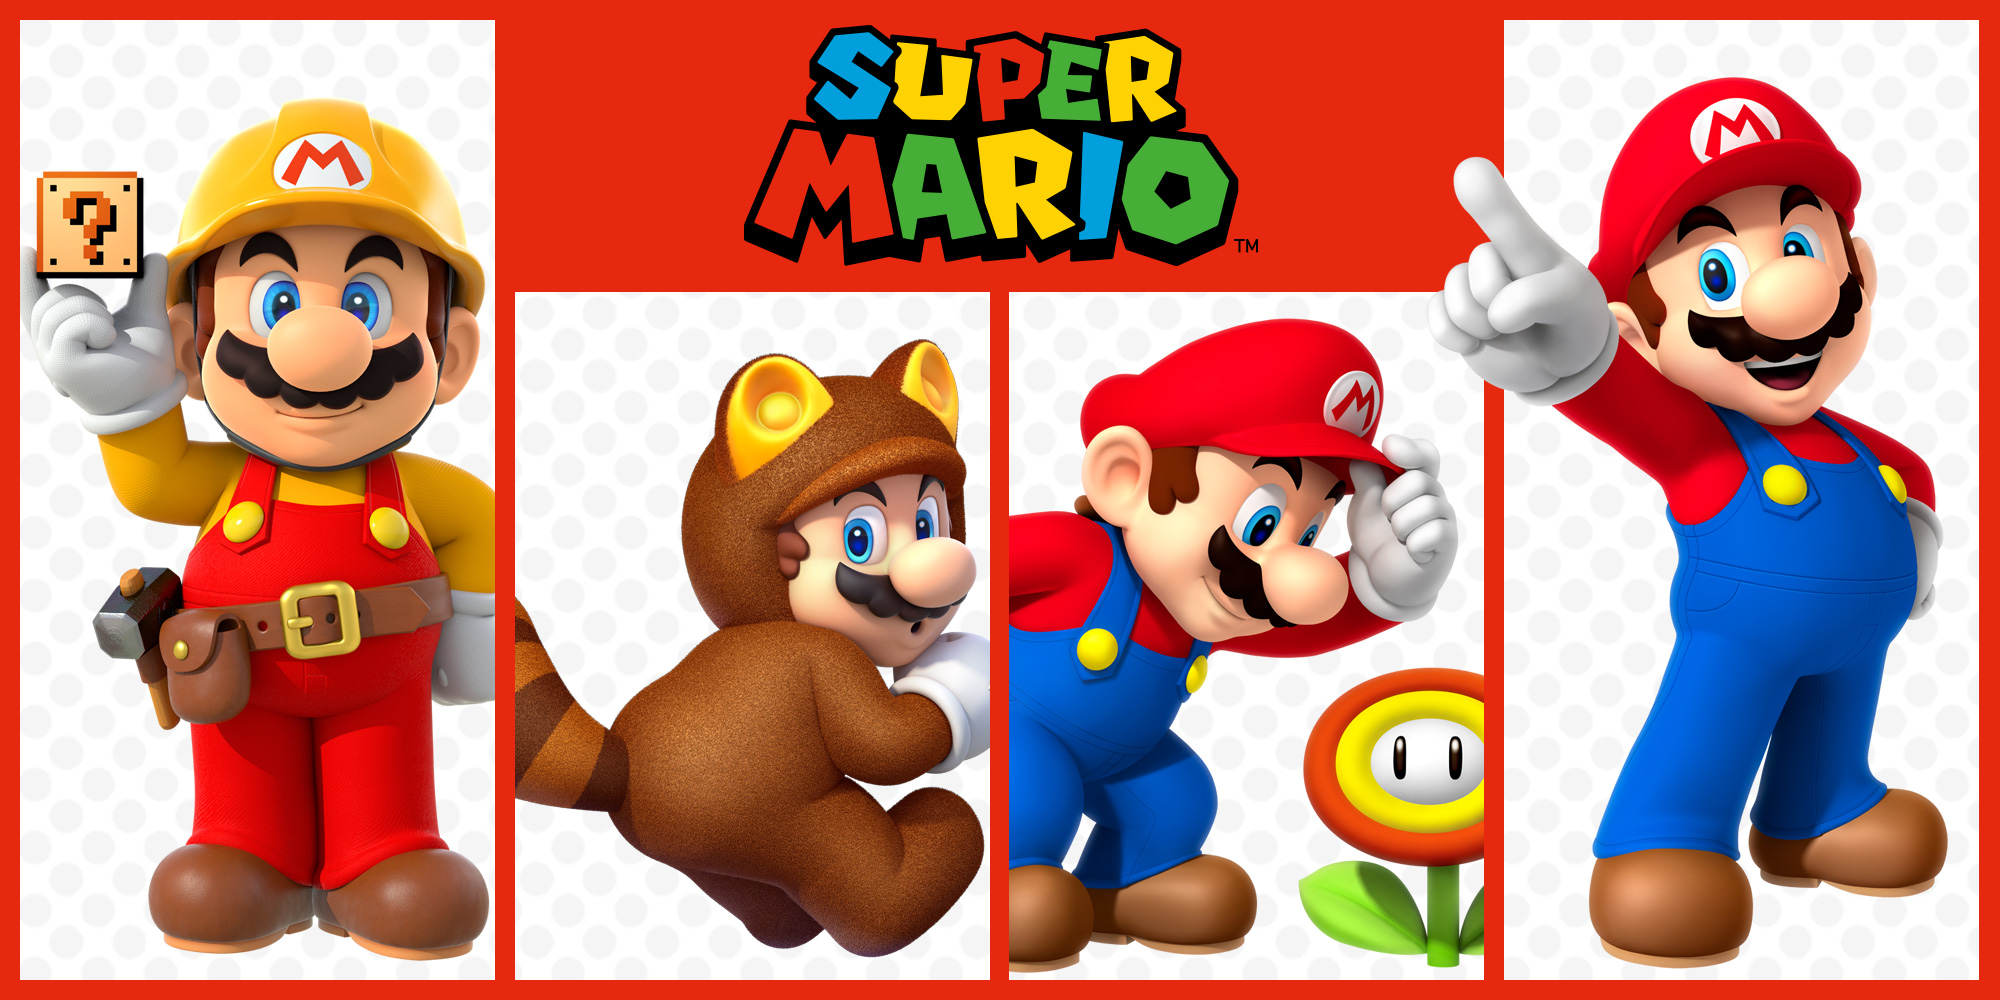 Op zoek naar meer Super Mario-avonturen? Kijk dan eens naar deze platformgames!